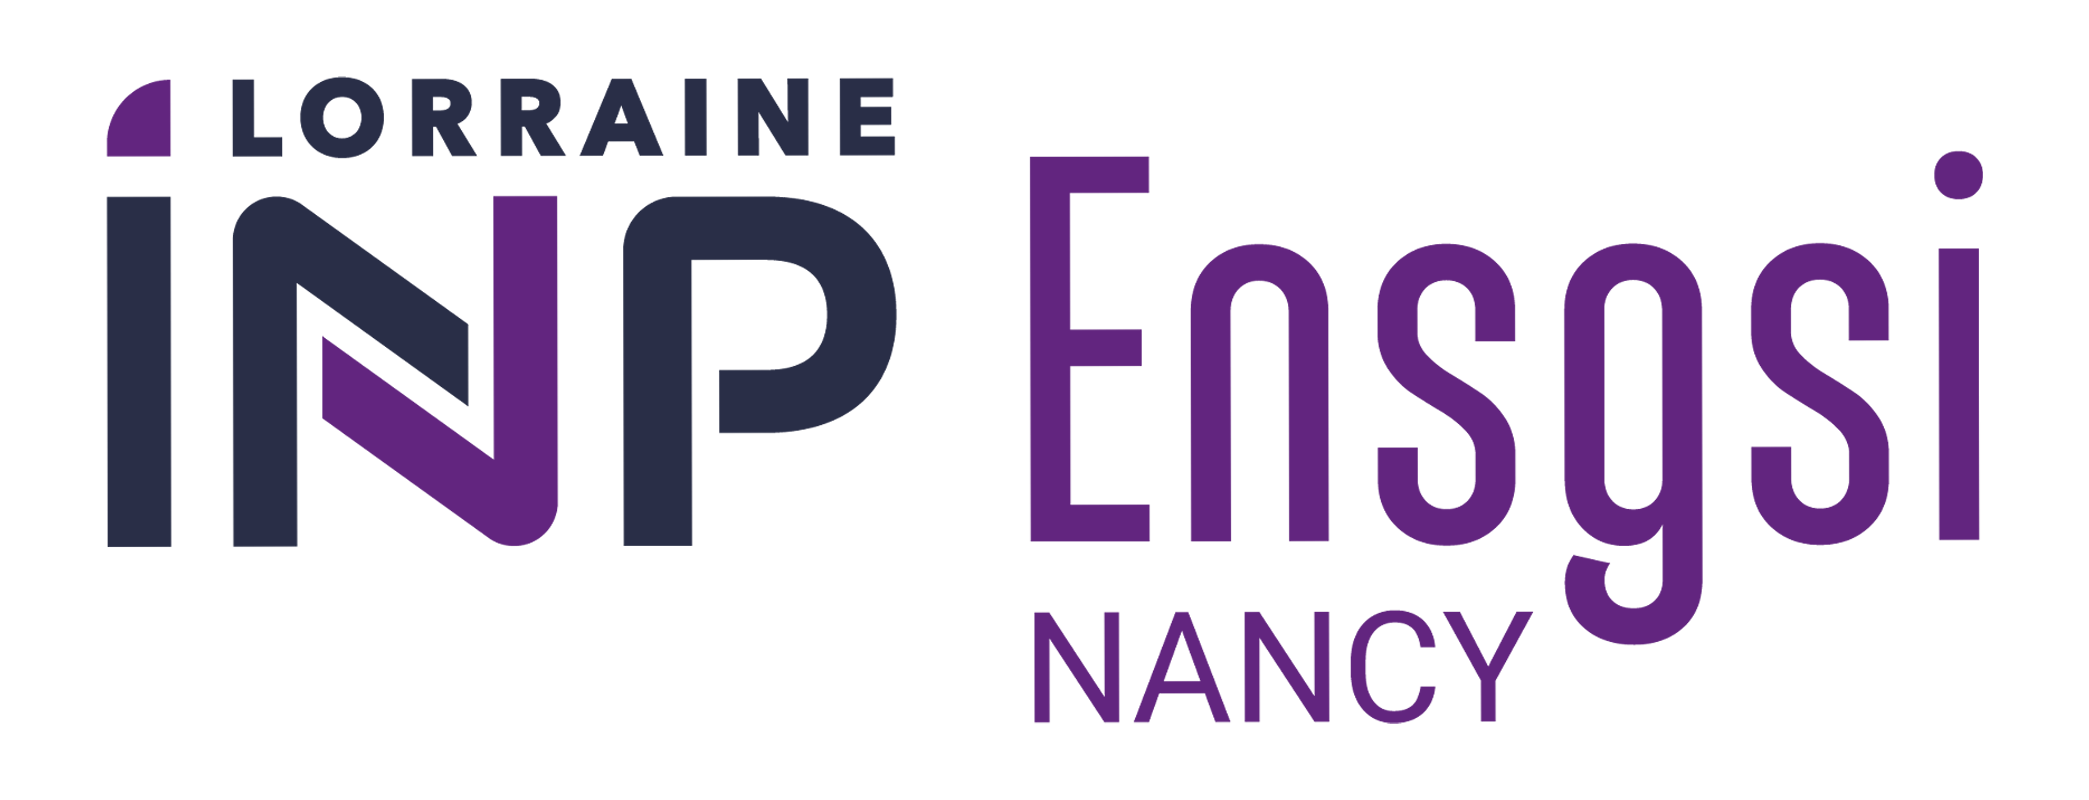 Logo de l’ENSGSI, grande école d’ingénieurs